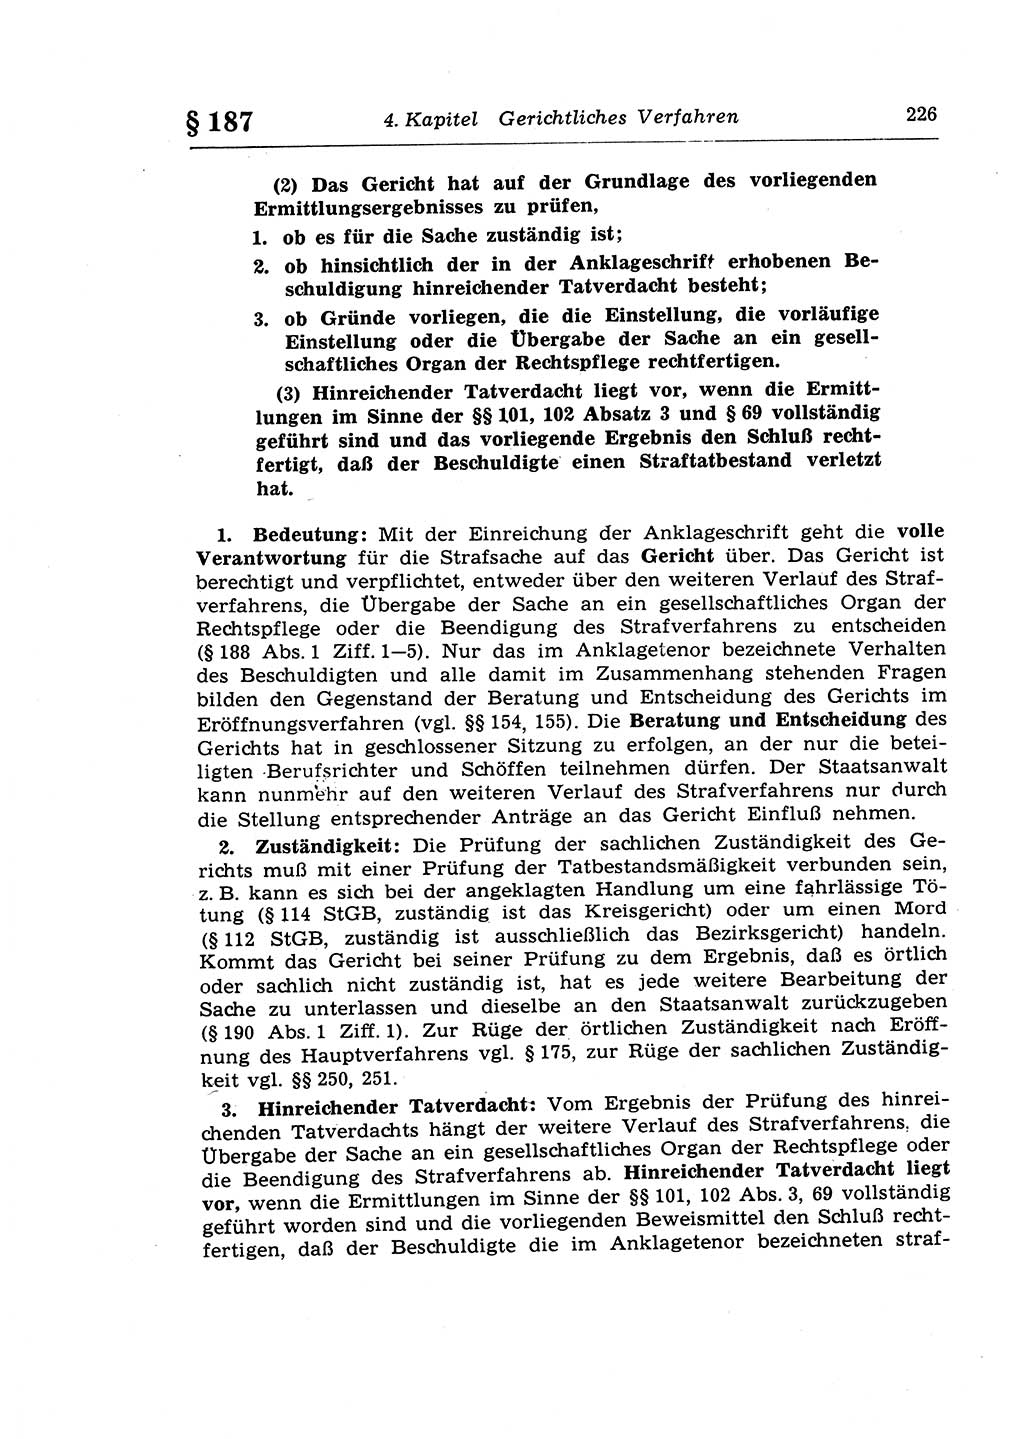 Strafprozeßrecht der DDR (Deutsche Demokratische Republik), Lehrkommentar zur Strafprozeßordnung (StPO) 1968, Seite 226 (Strafprozeßr. DDR Lehrkomm. StPO 19688, S. 226)